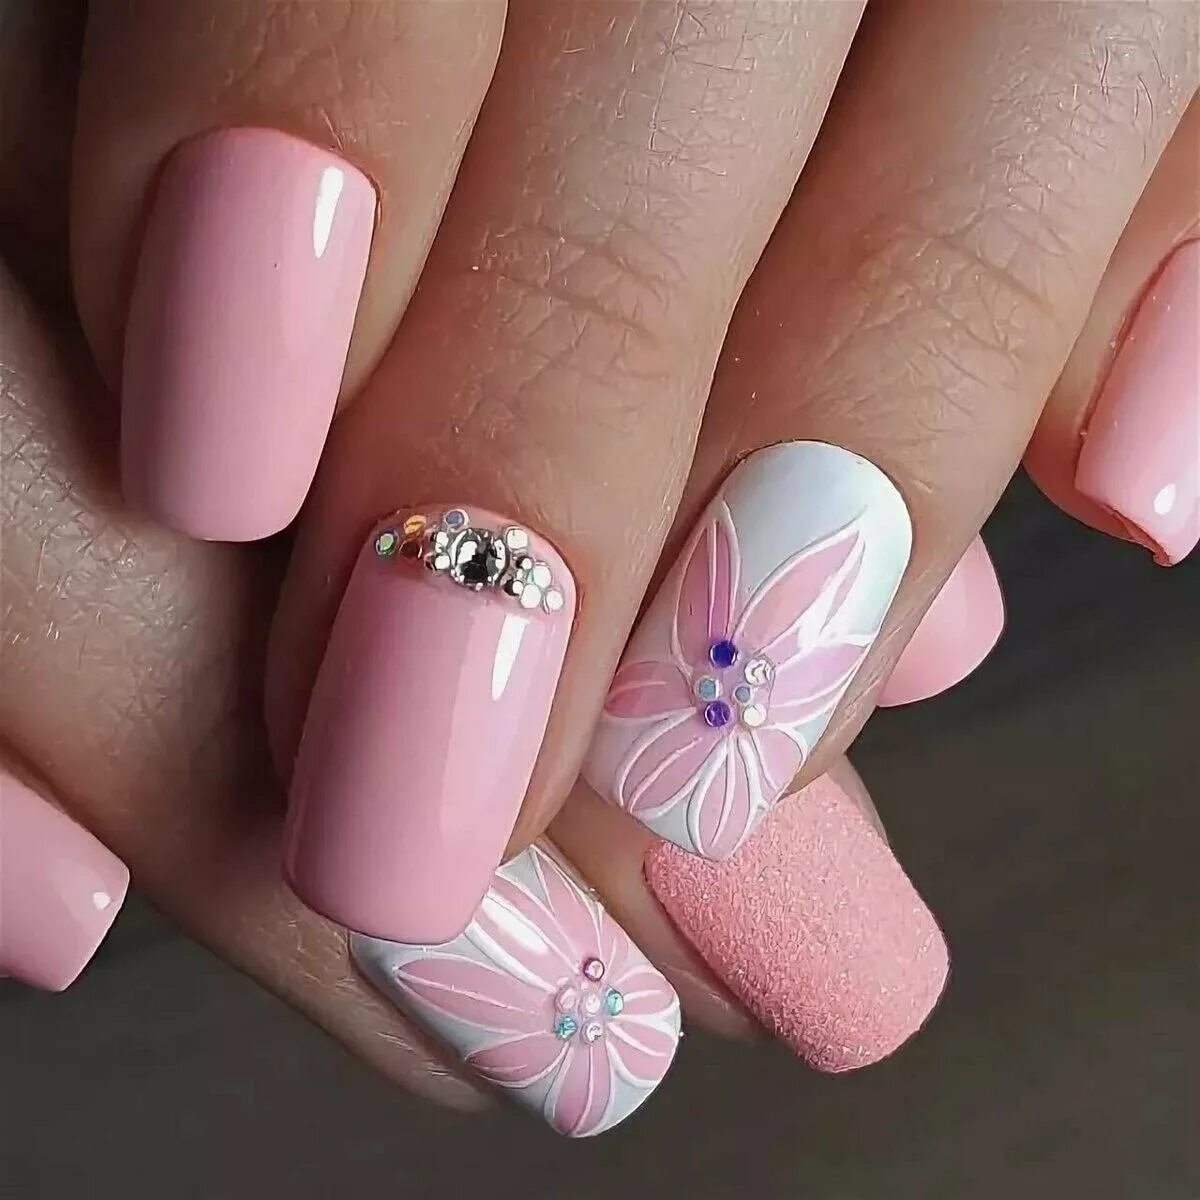 Розовый маникюр. Р̸о̸з̸о̸в̸ы̸й̸ м̸а̸н̸и̸к̸. Красивые ногти. Красивые ногти на лето. Красивые ногти на весну фото